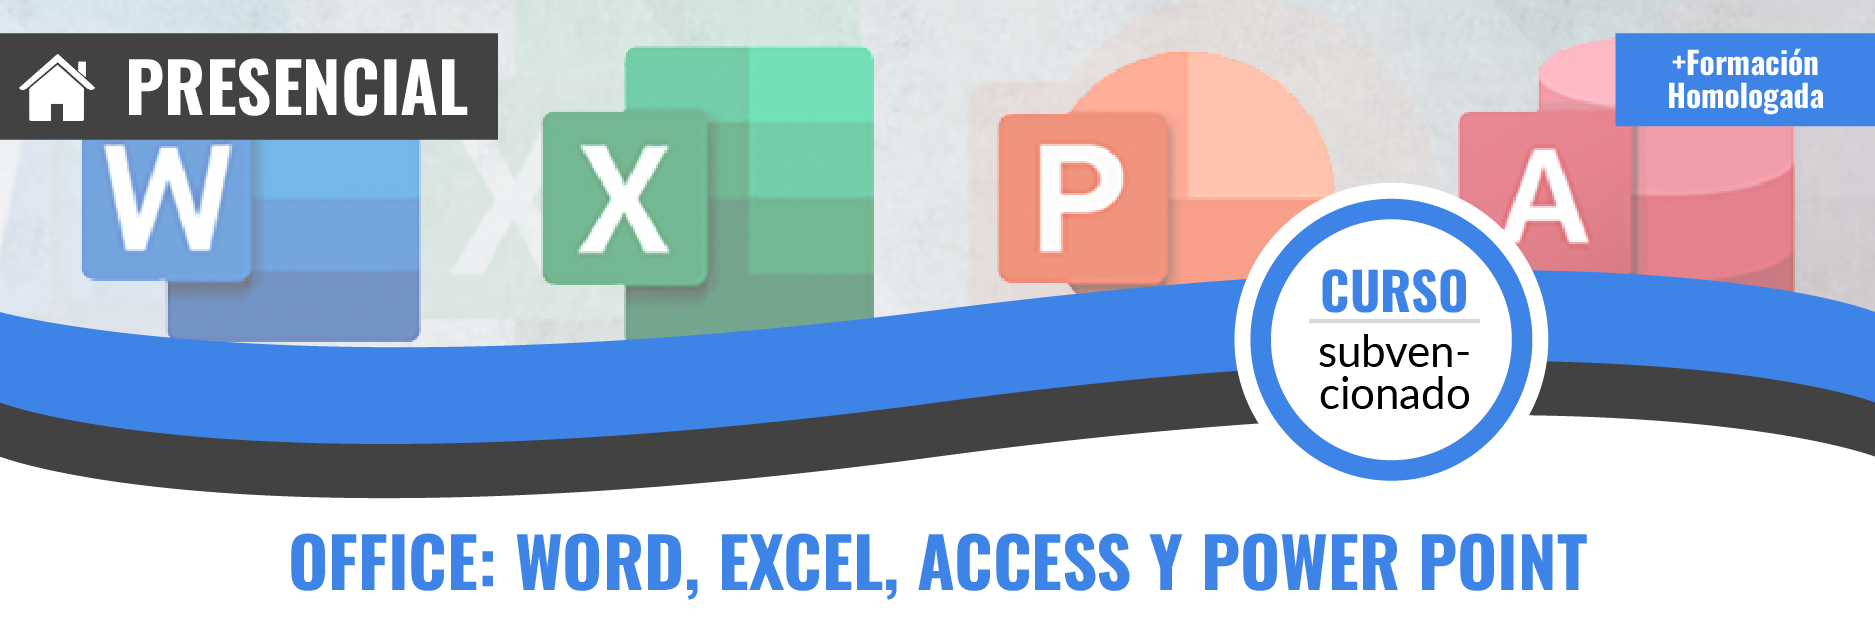 Curso gratis de ADGG052PO Office: Word, Excel, Access y Power Point presencial